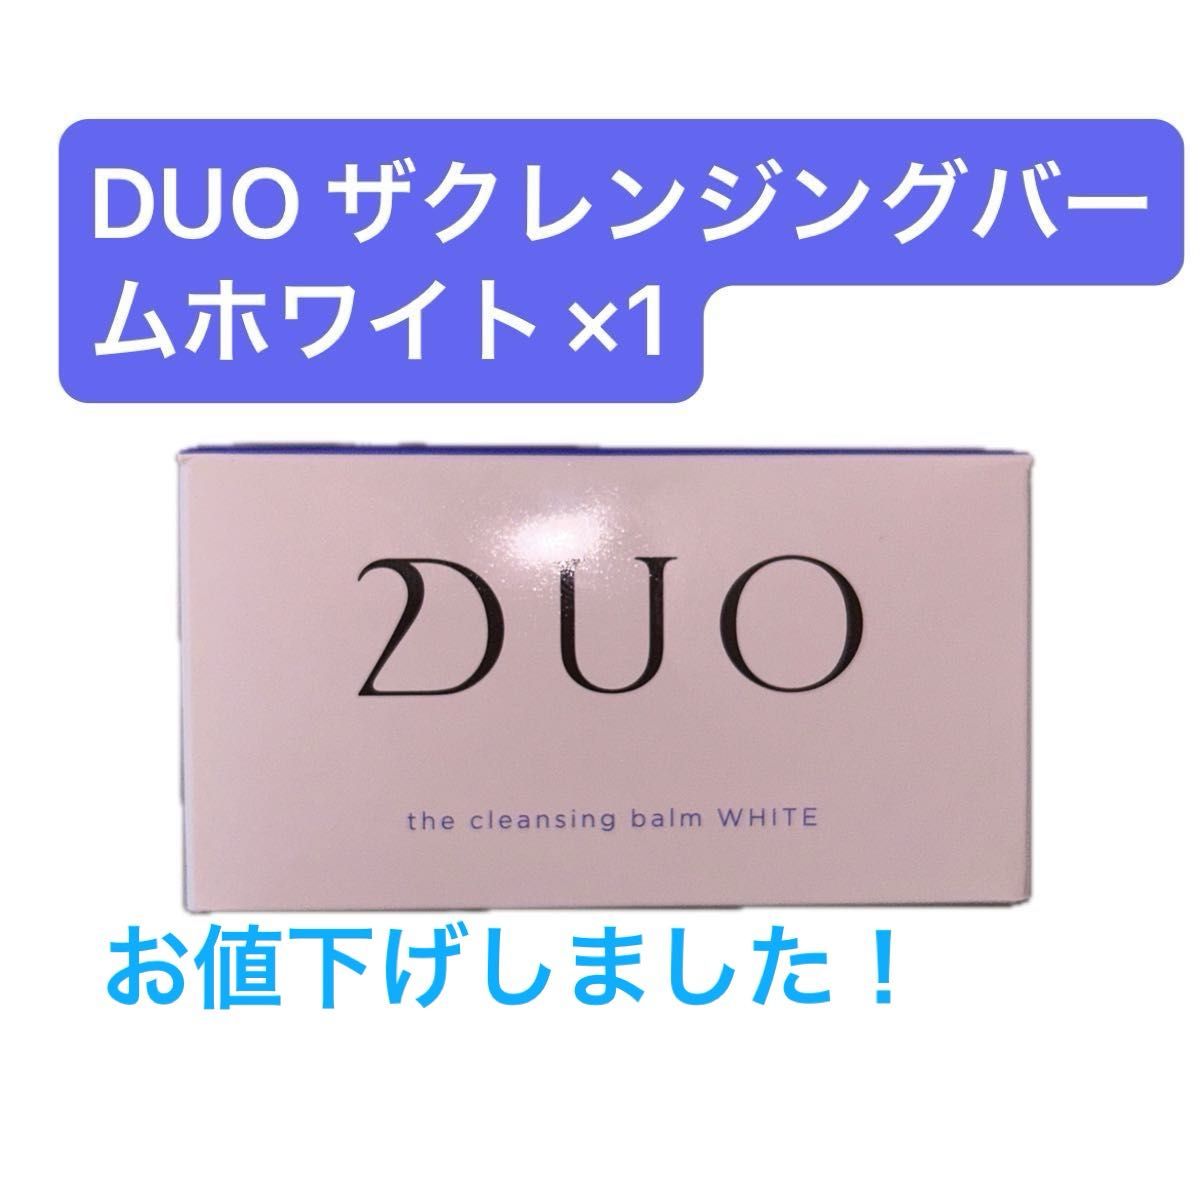 【新品未開封】DUO ザクレンジングバーム ホワイトa 90g